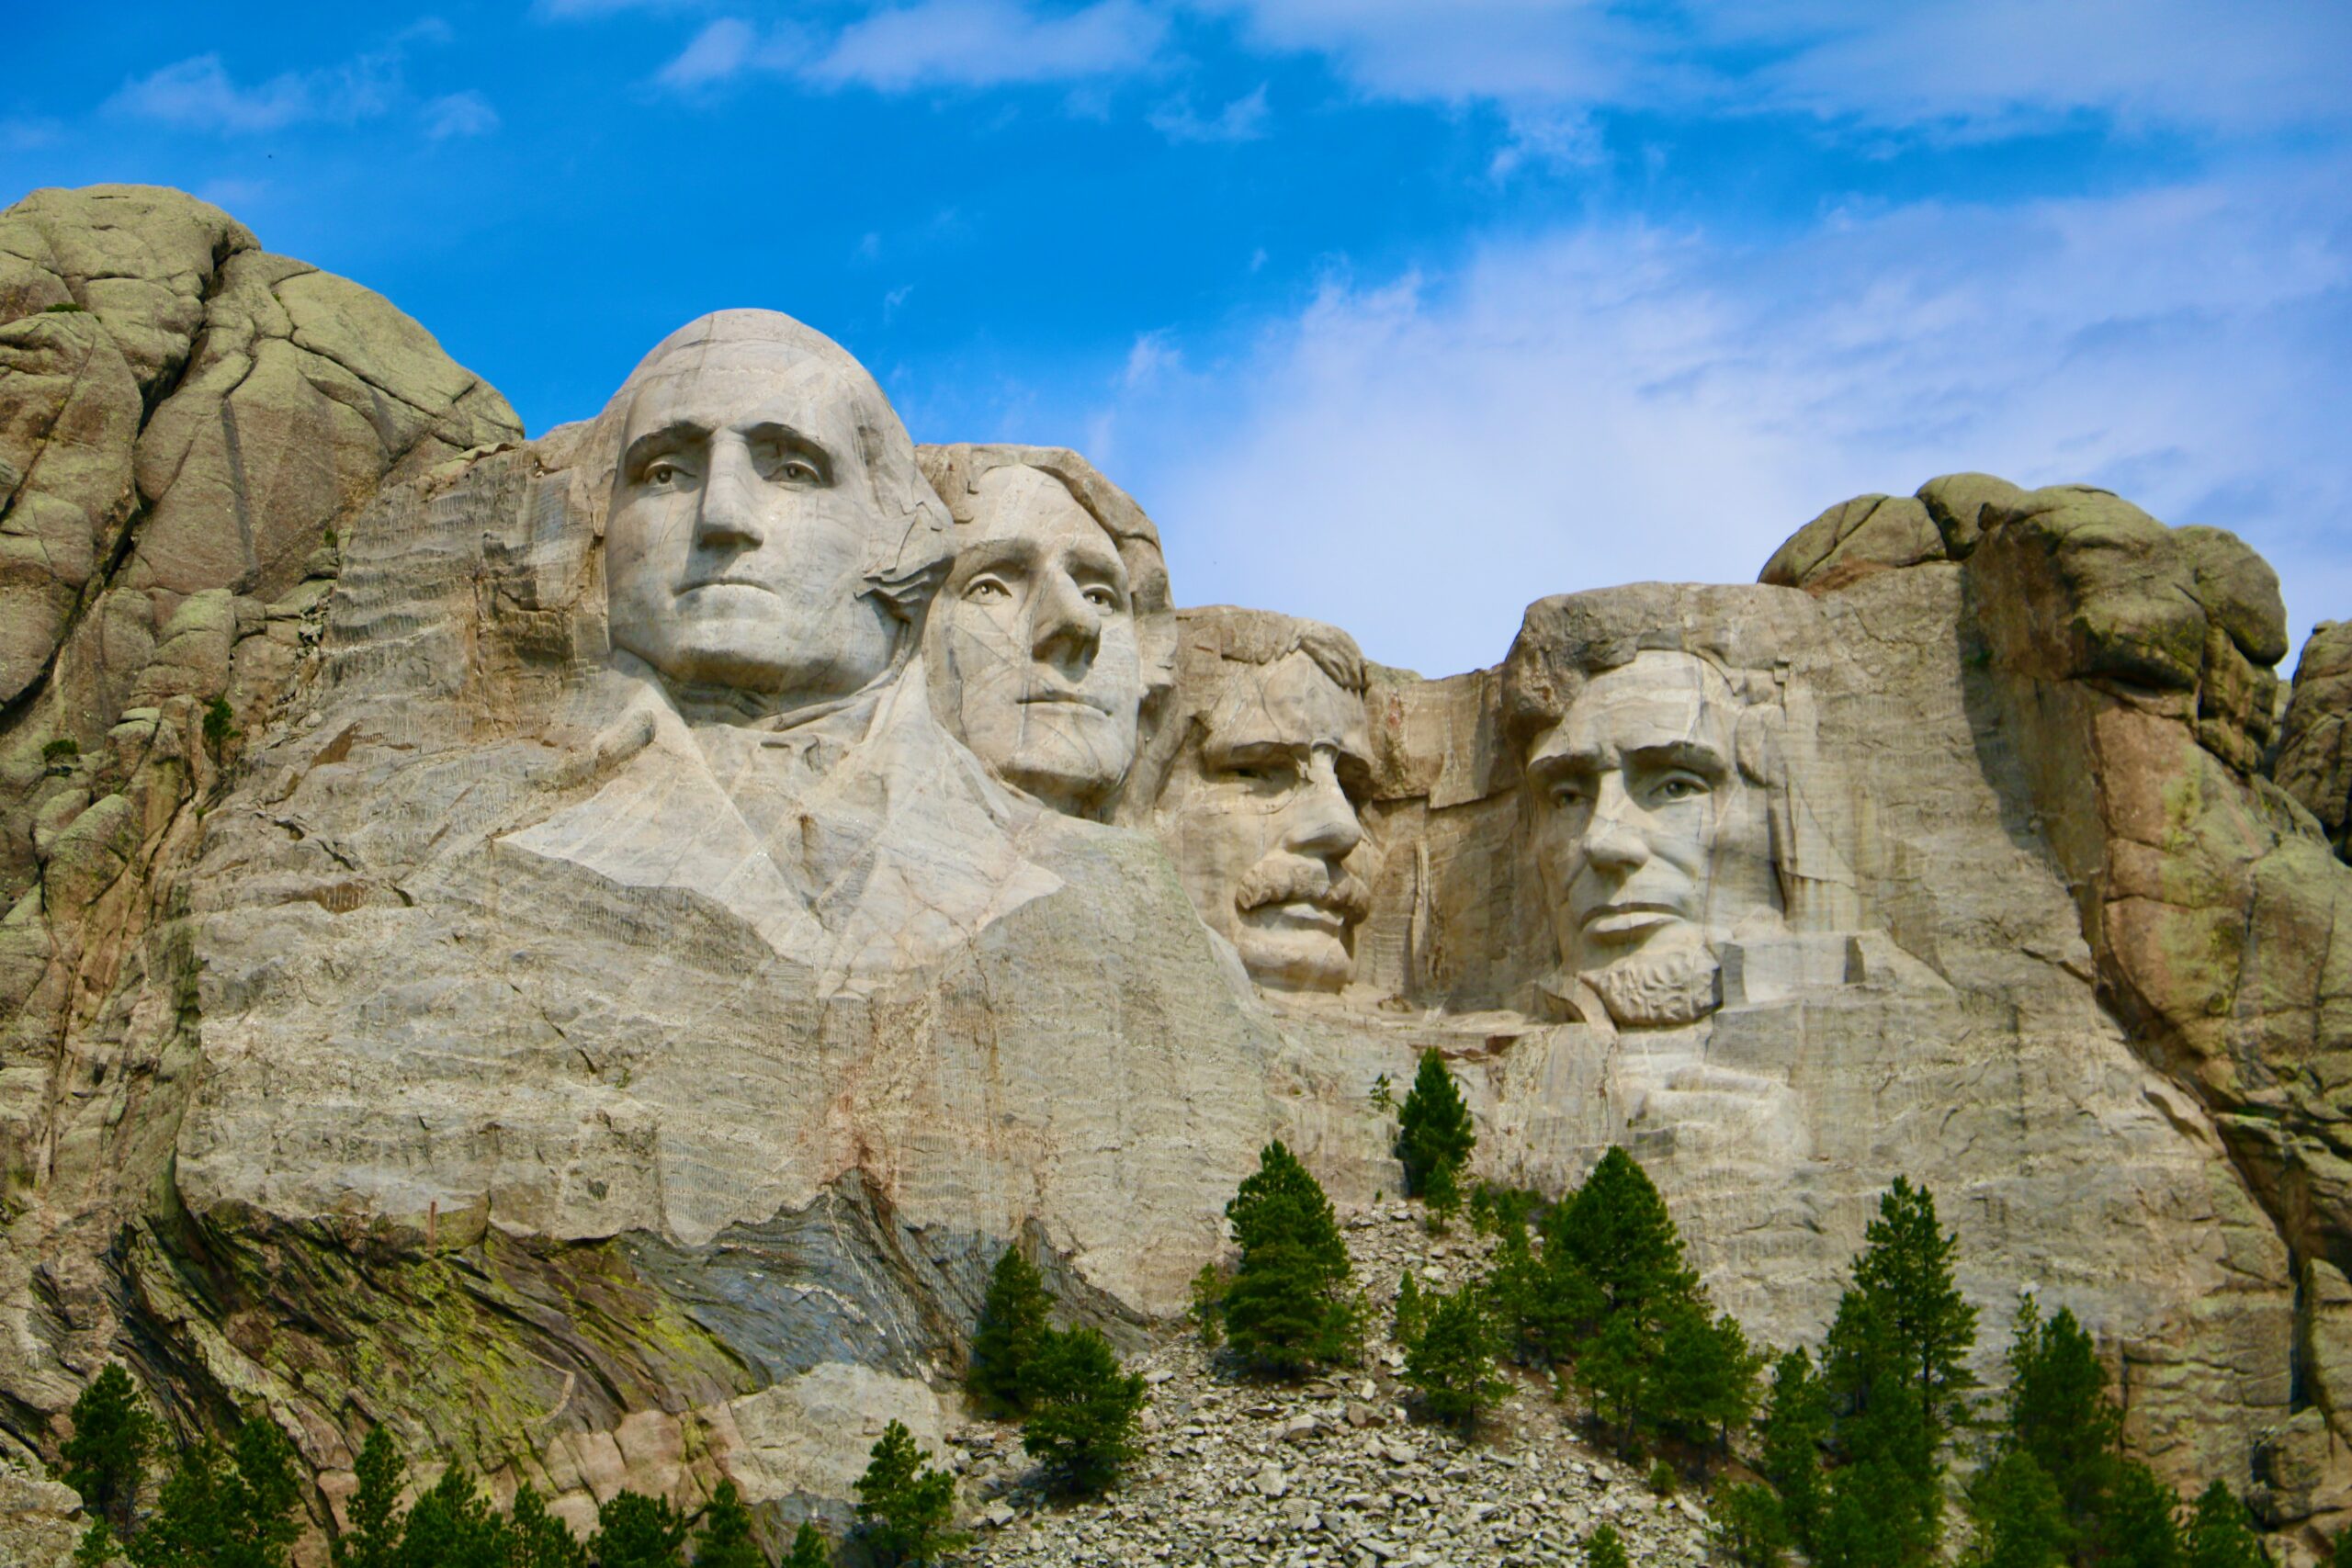 <b>USA</b> - <i>Mount Rushmore National Memorial</i>